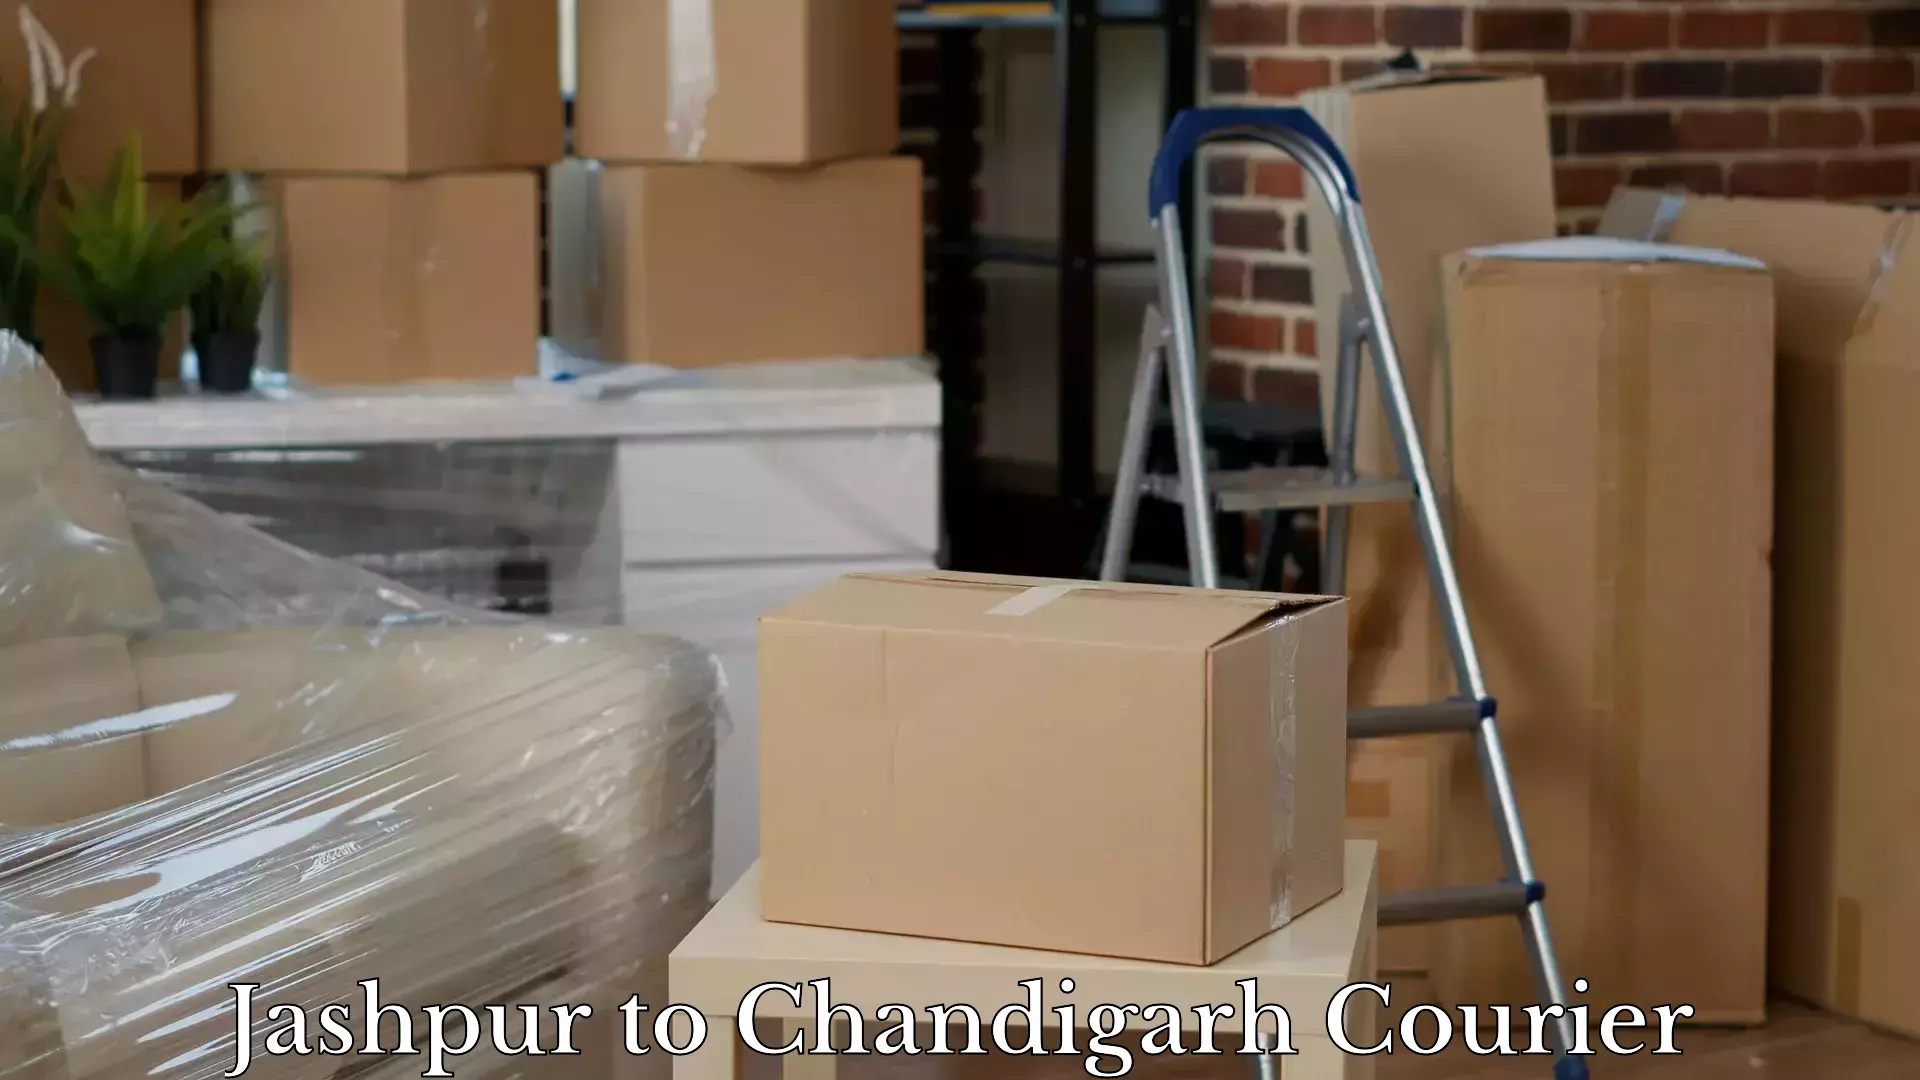 Door-to-door baggage service Jashpur to Chandigarh